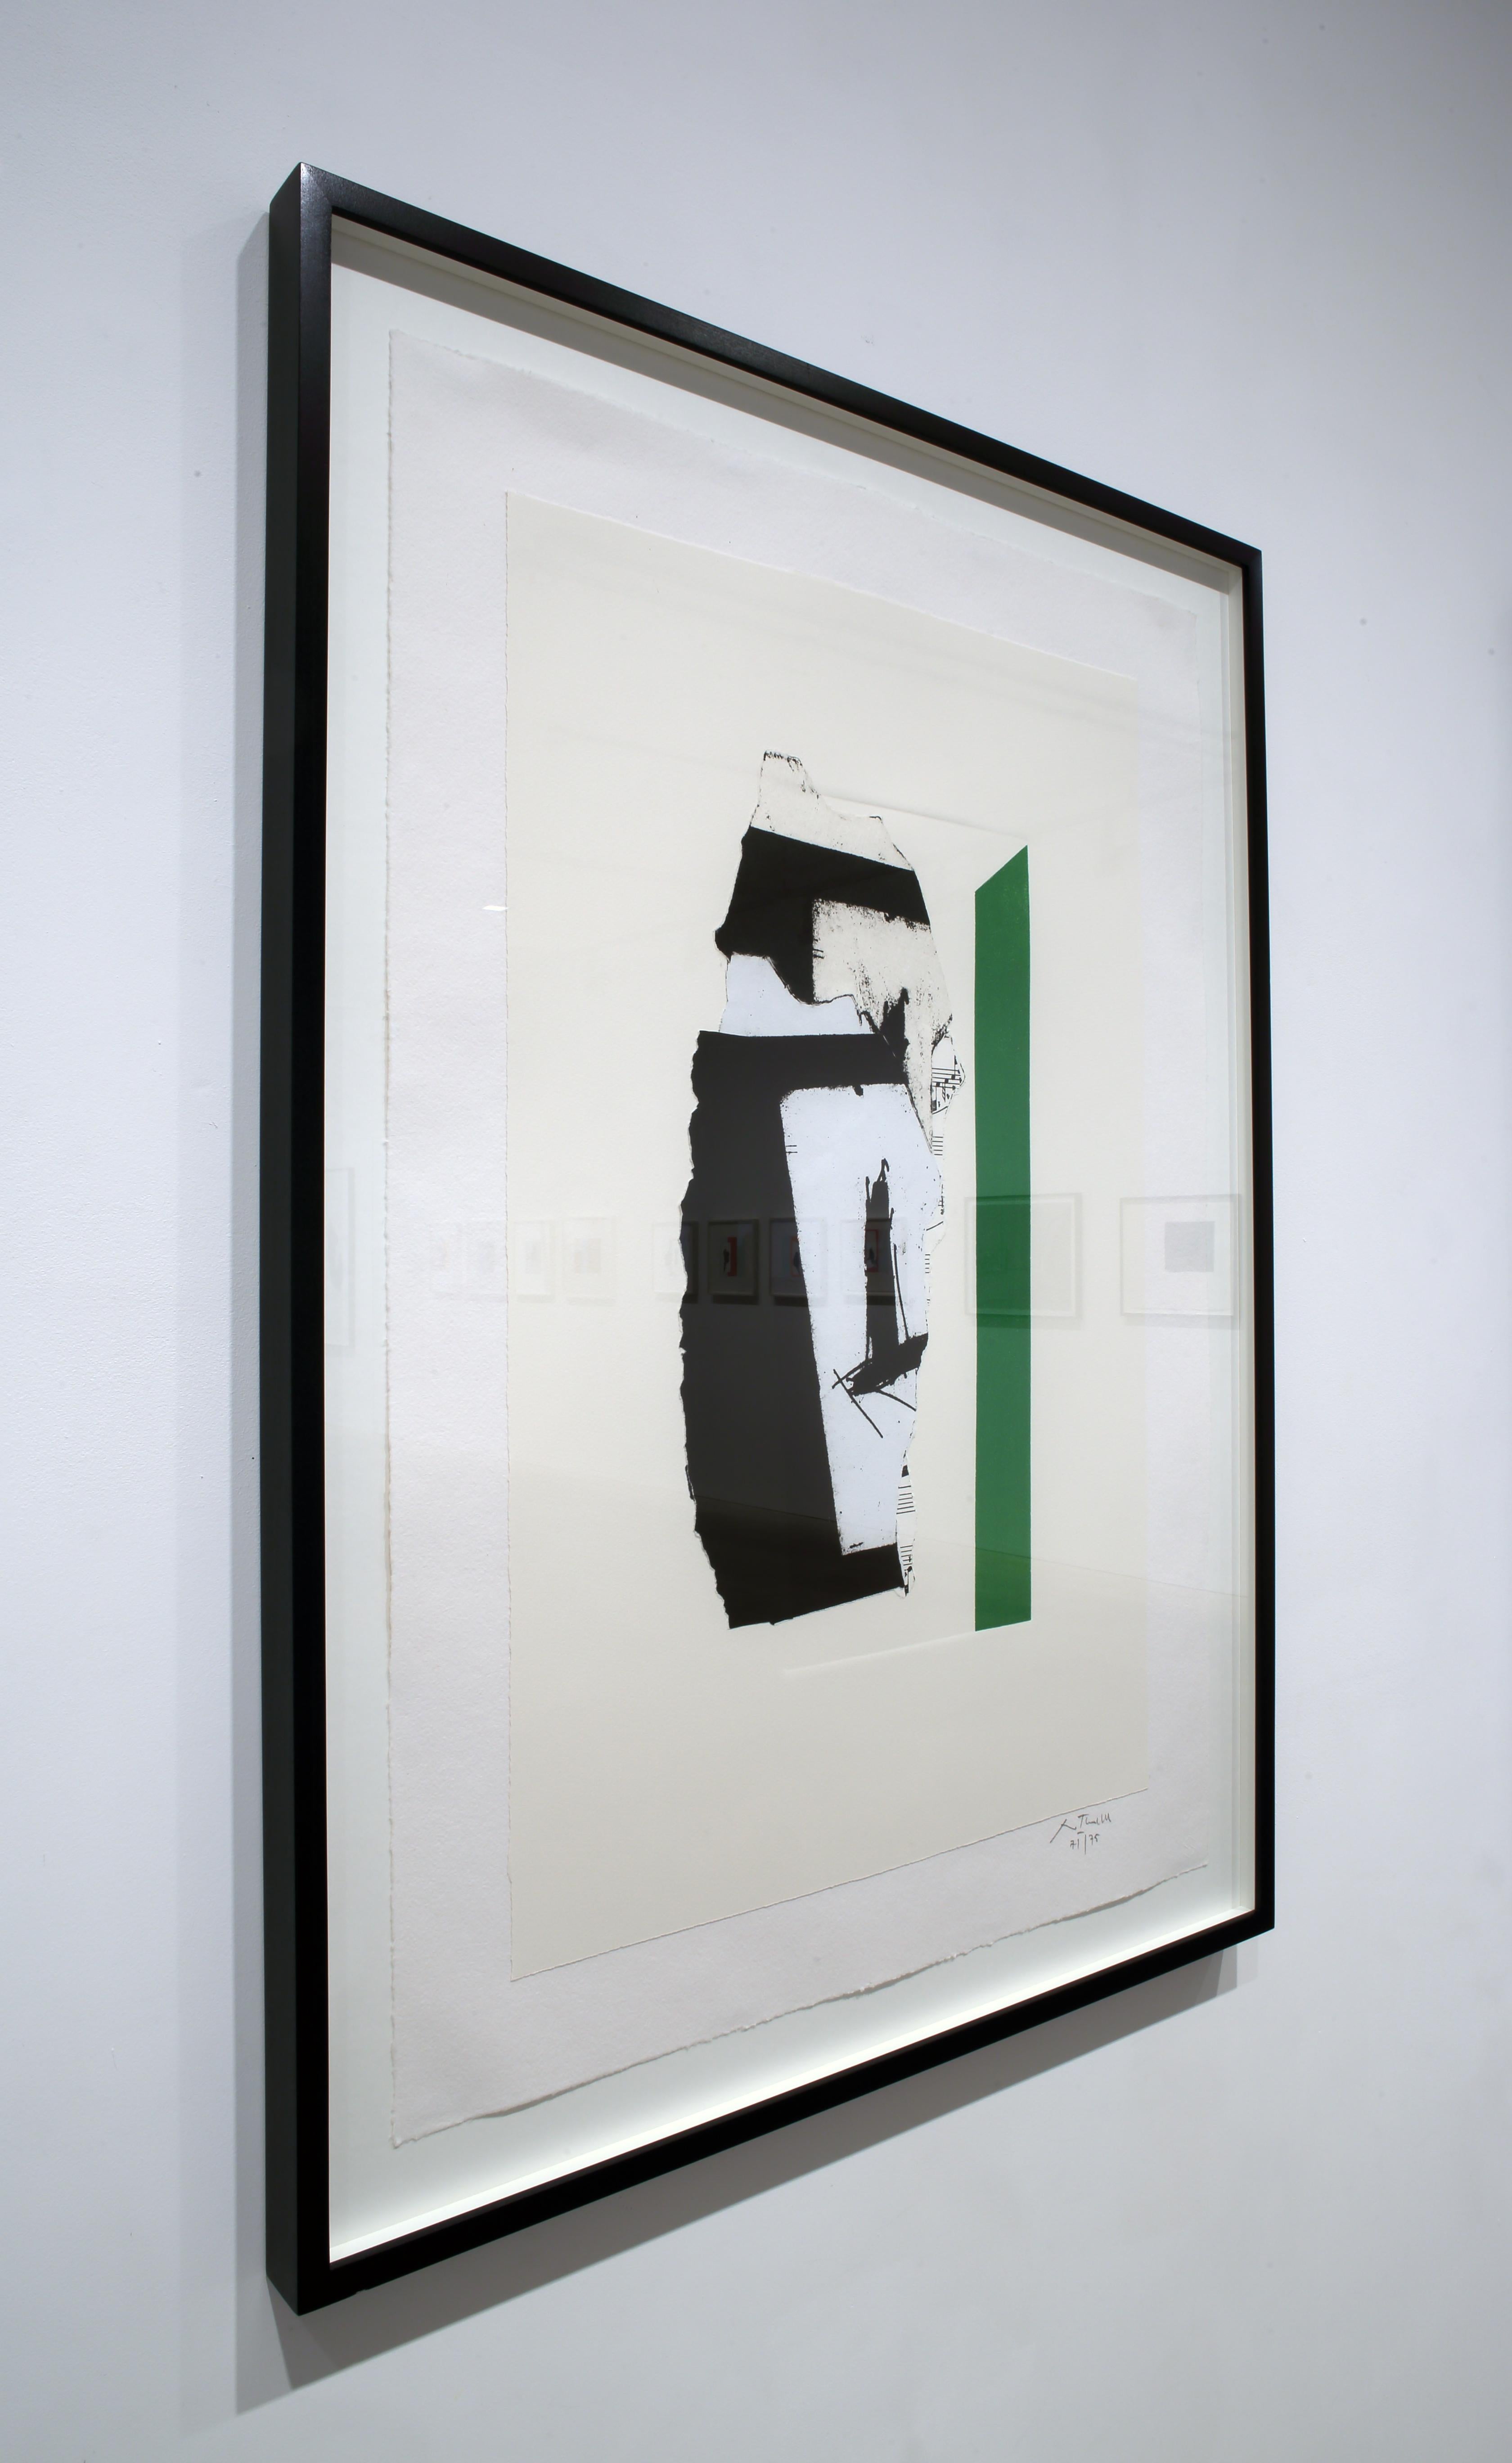 In Weiß mit grünen Streifen (Abstrakter Expressionismus), Print, von Robert Motherwell